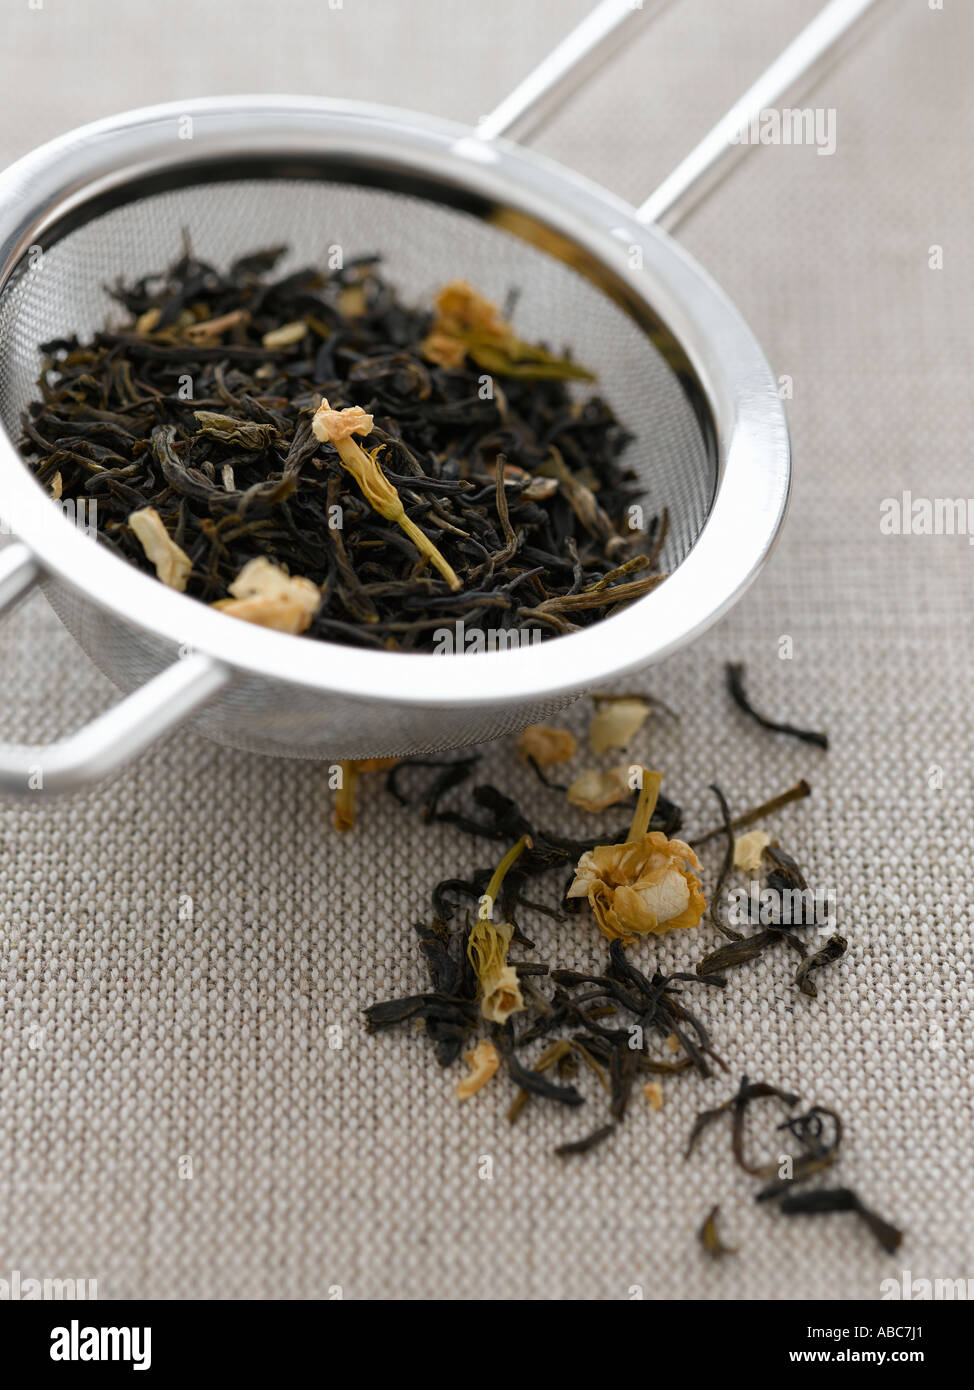 Gelsomino le foglie di tè in filtro di tè - fascia alta Hasselblad 61mb di immagine digitale Foto Stock